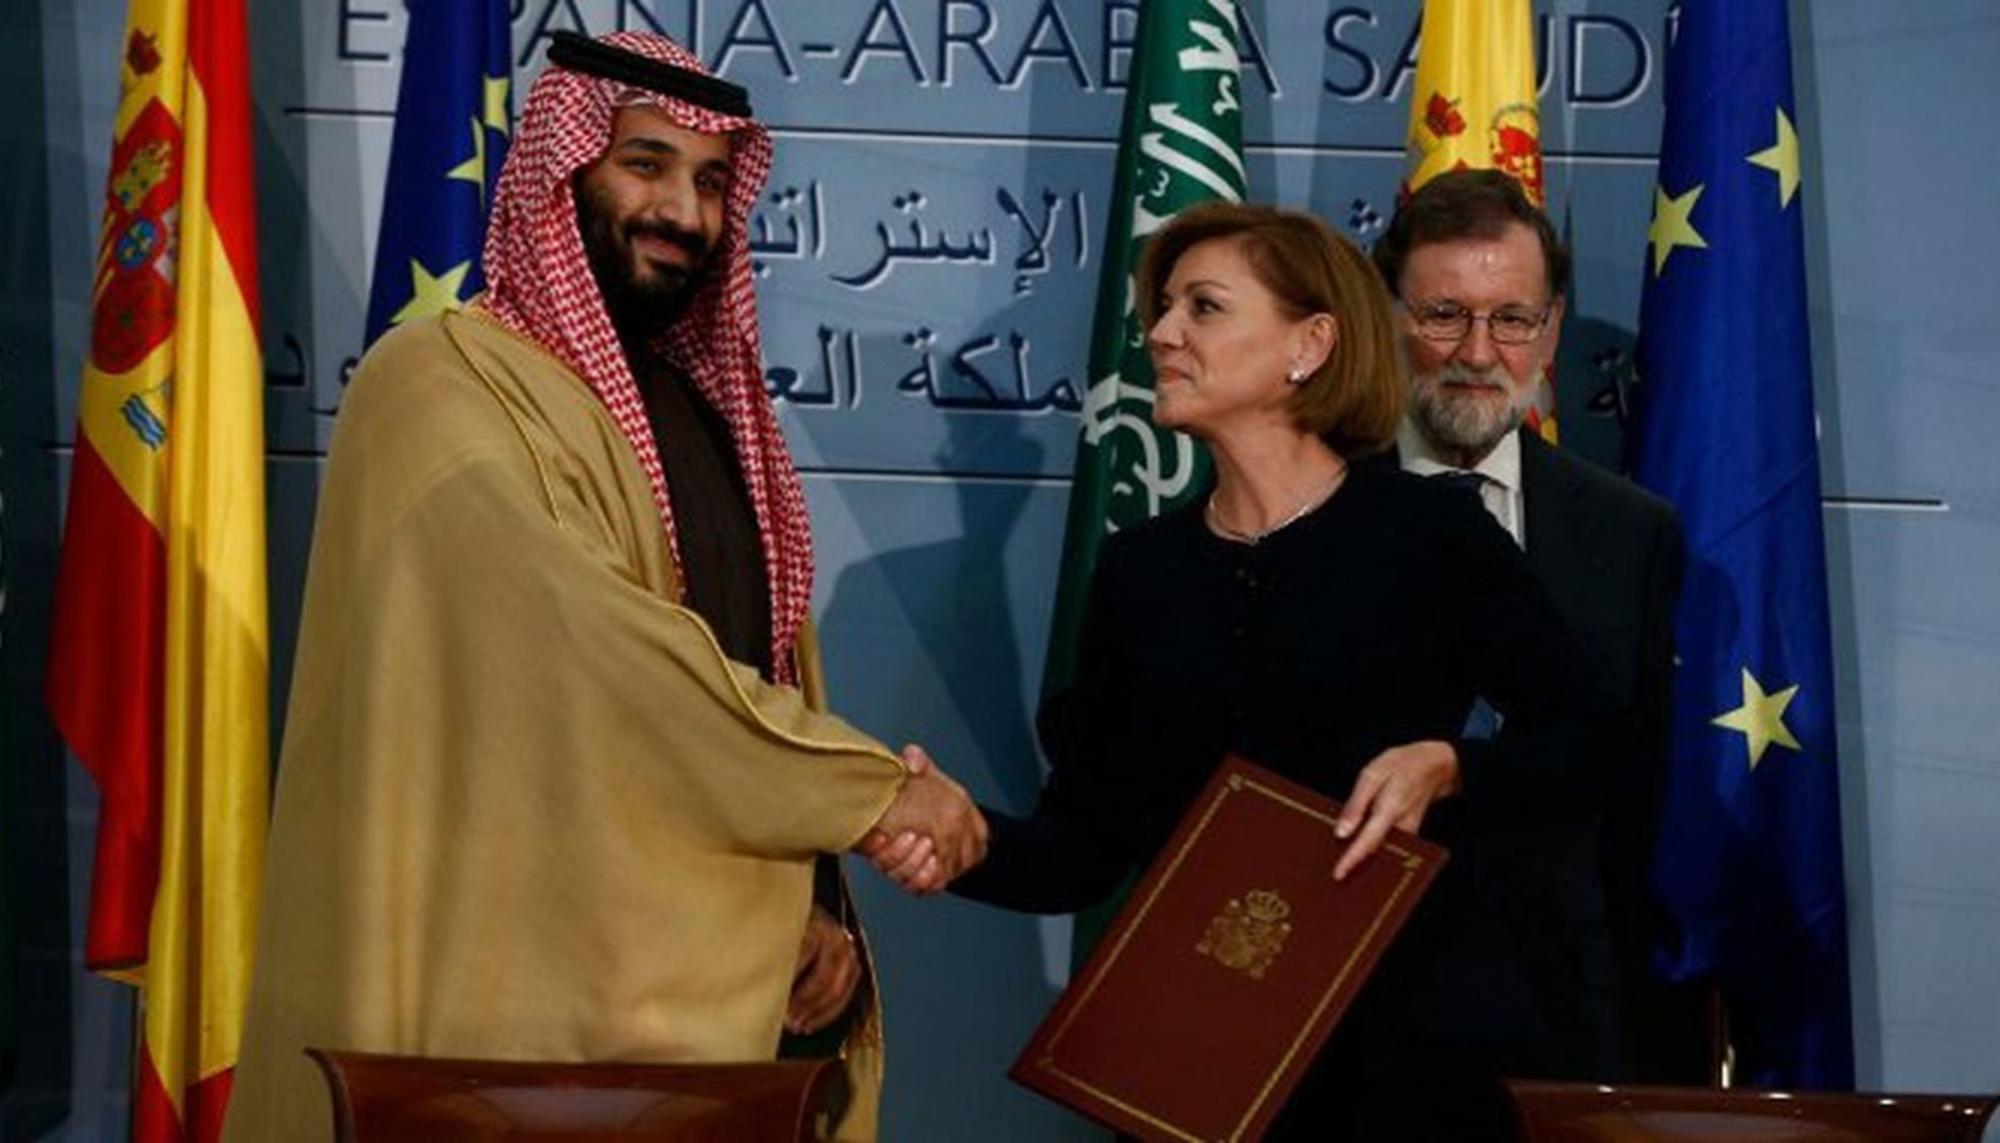 España Arabia Saudí